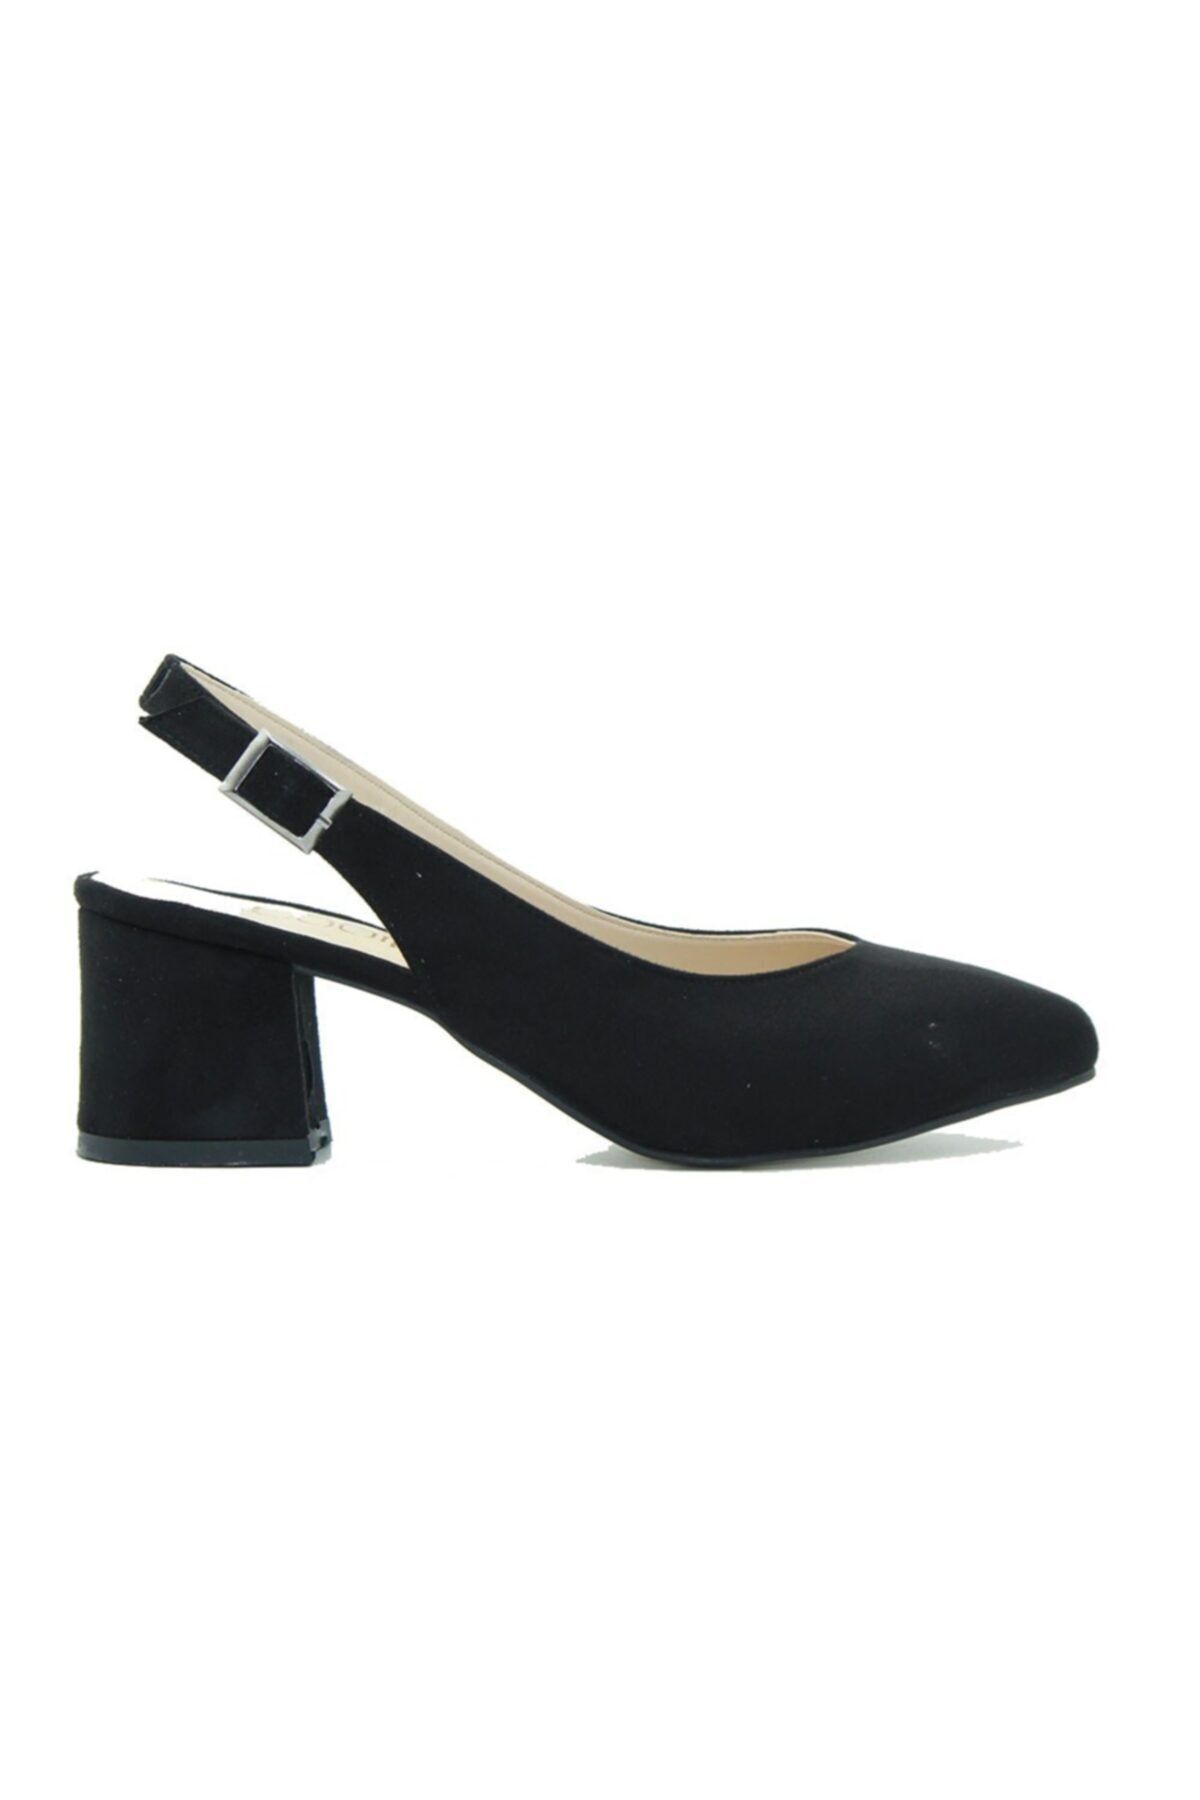 cadiffe Kadın Siyah Süet Klasik Topuklu Ayakkabı